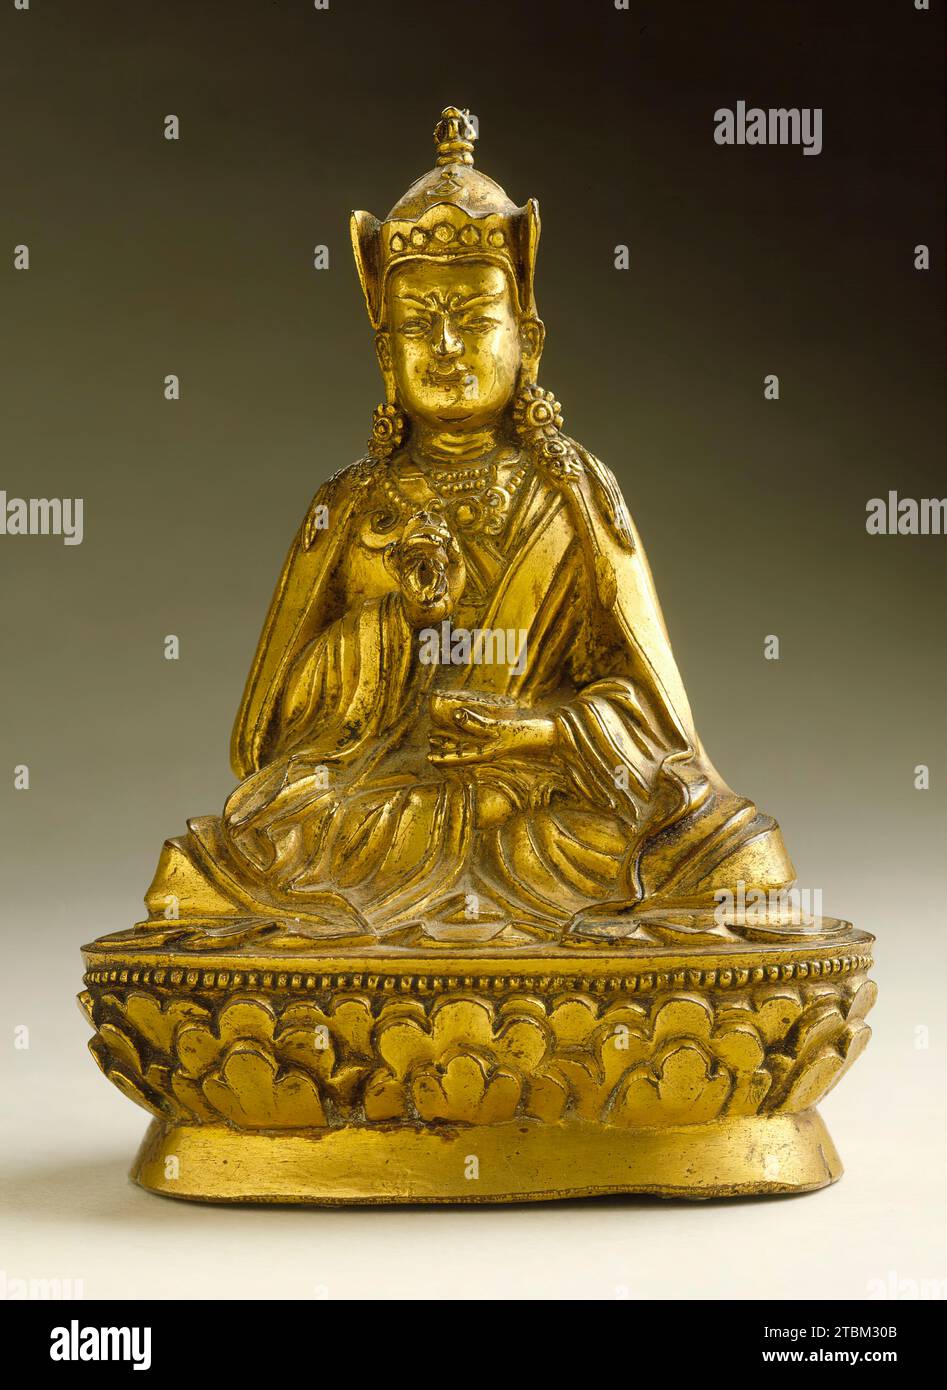 Padmasambhava (Guru Rinpoche, 8th century), 17th-18th century. Stock Photo